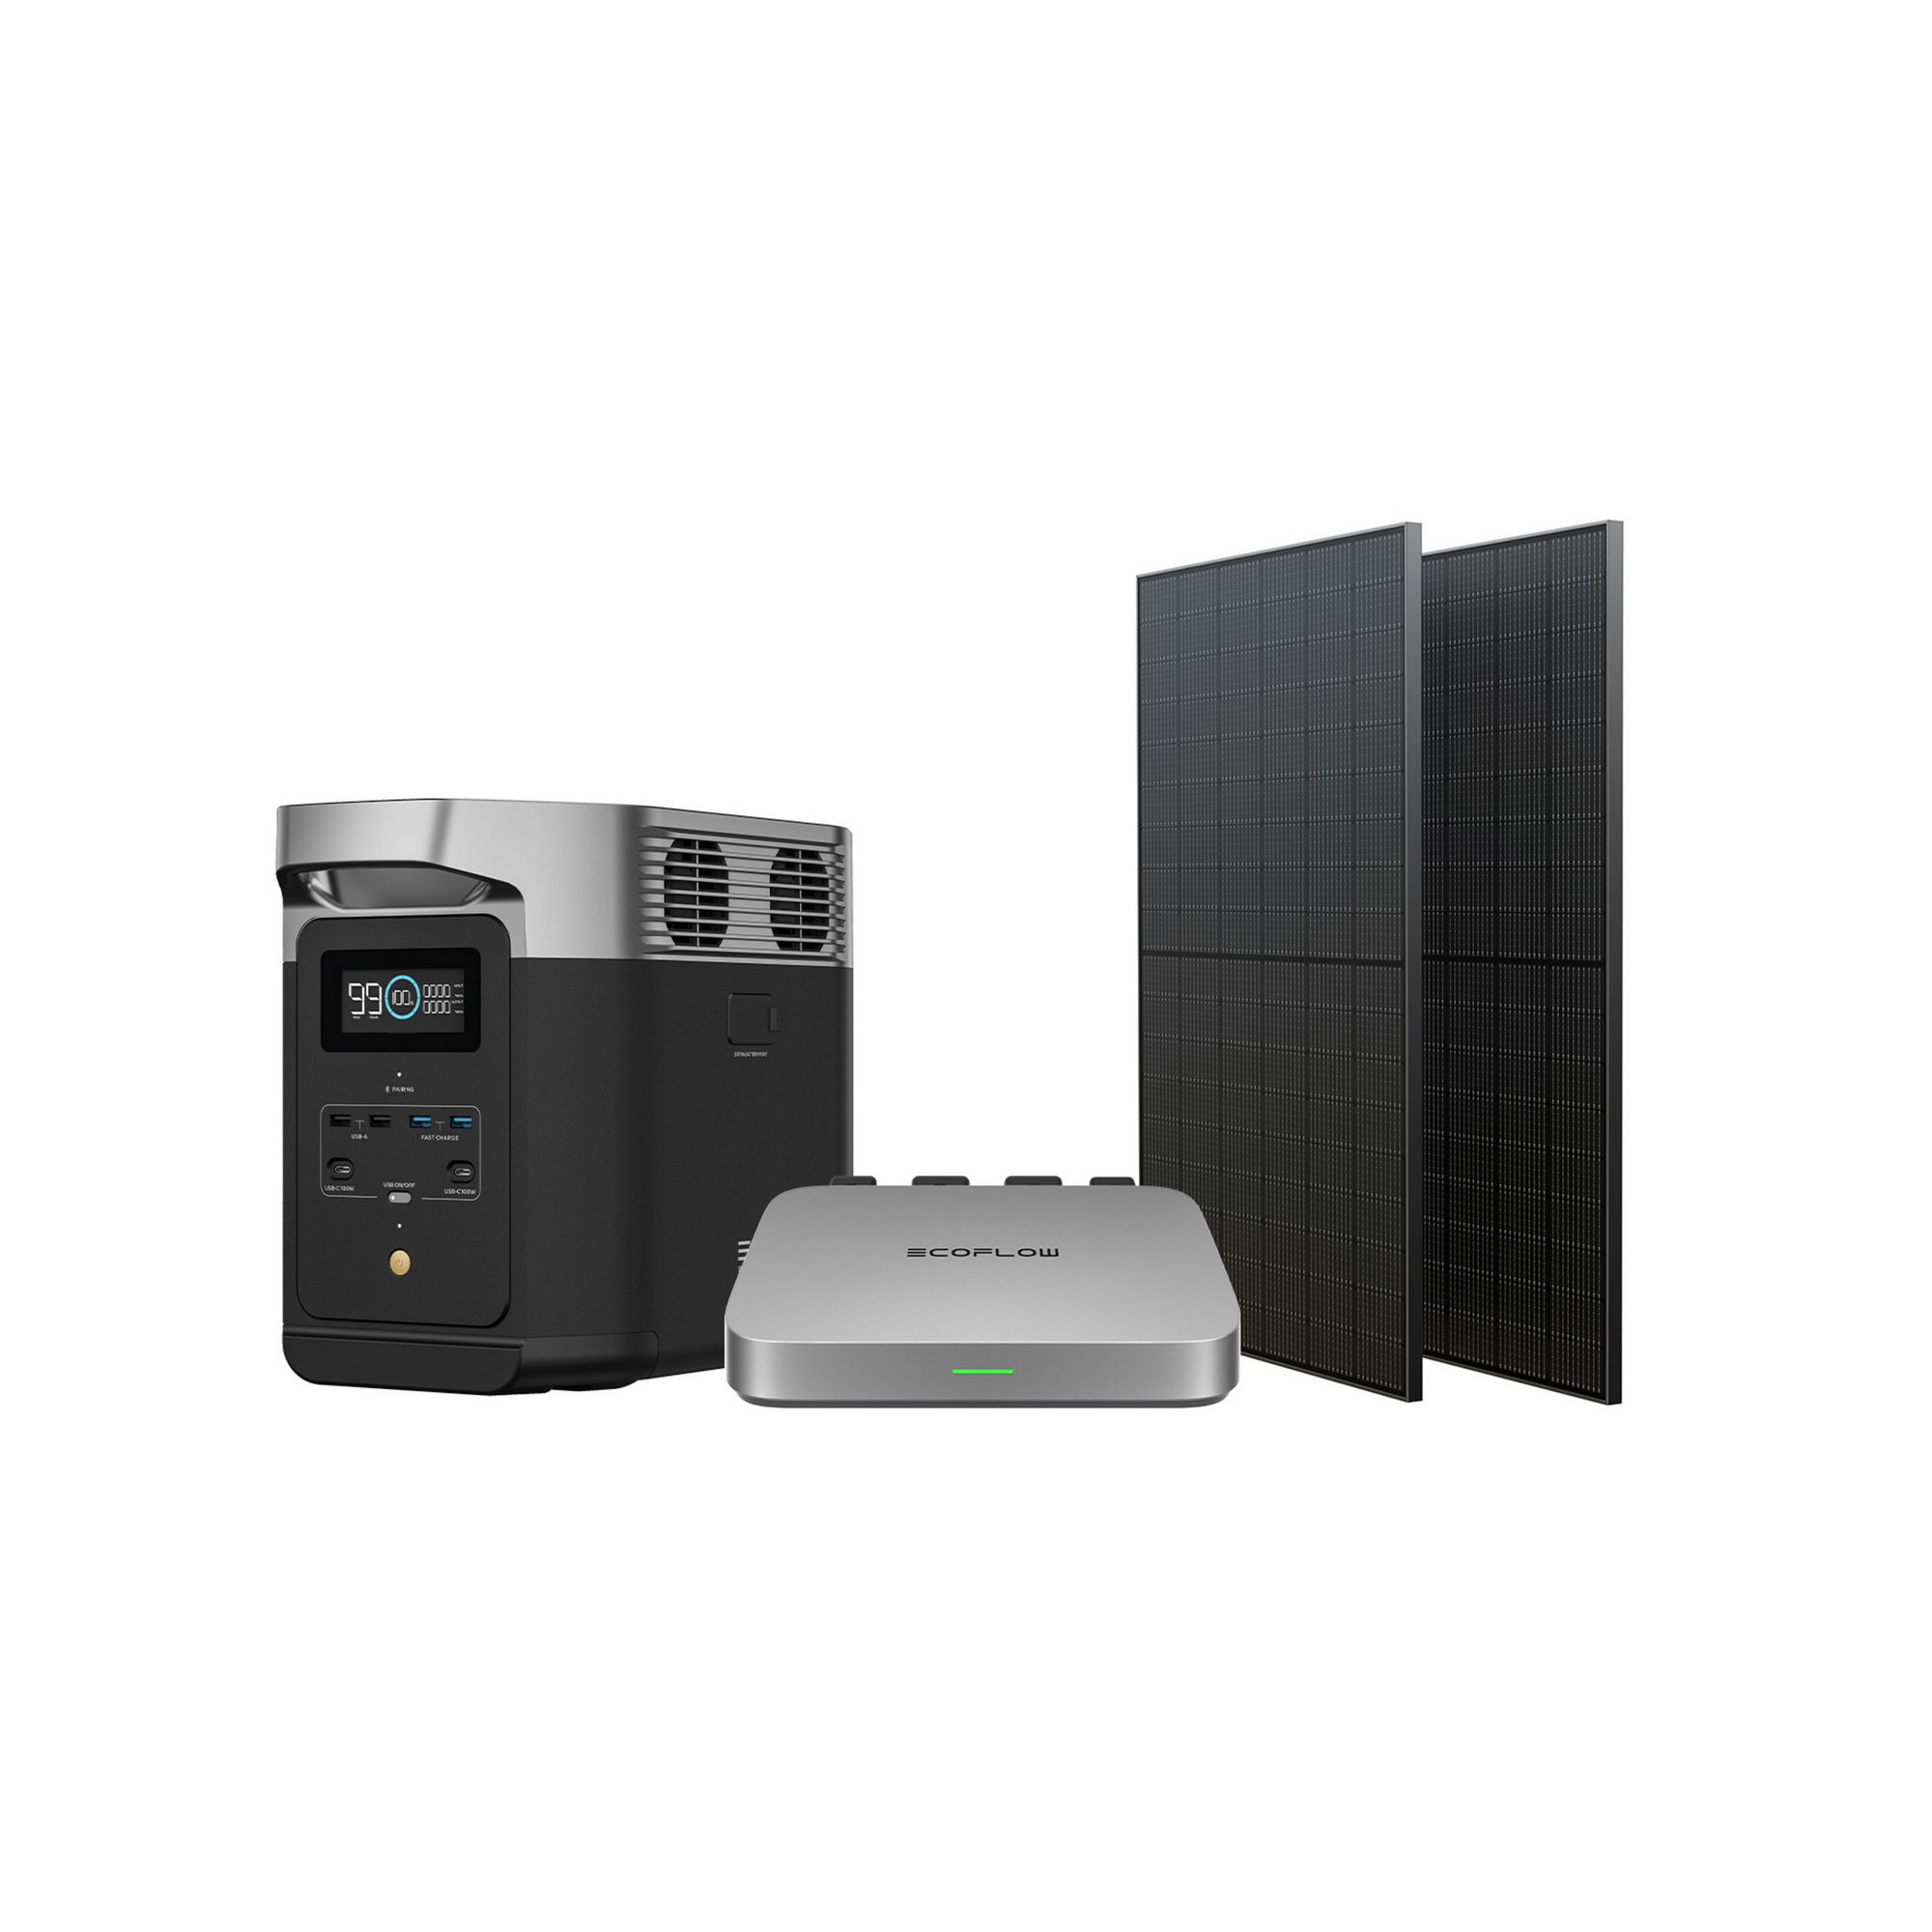 Balkonkraftwerk-Set '600 Delta 2' mit Powerstation Delta 2, PowerStream 600 W und 2 Solarpanele je 400 W + product picture